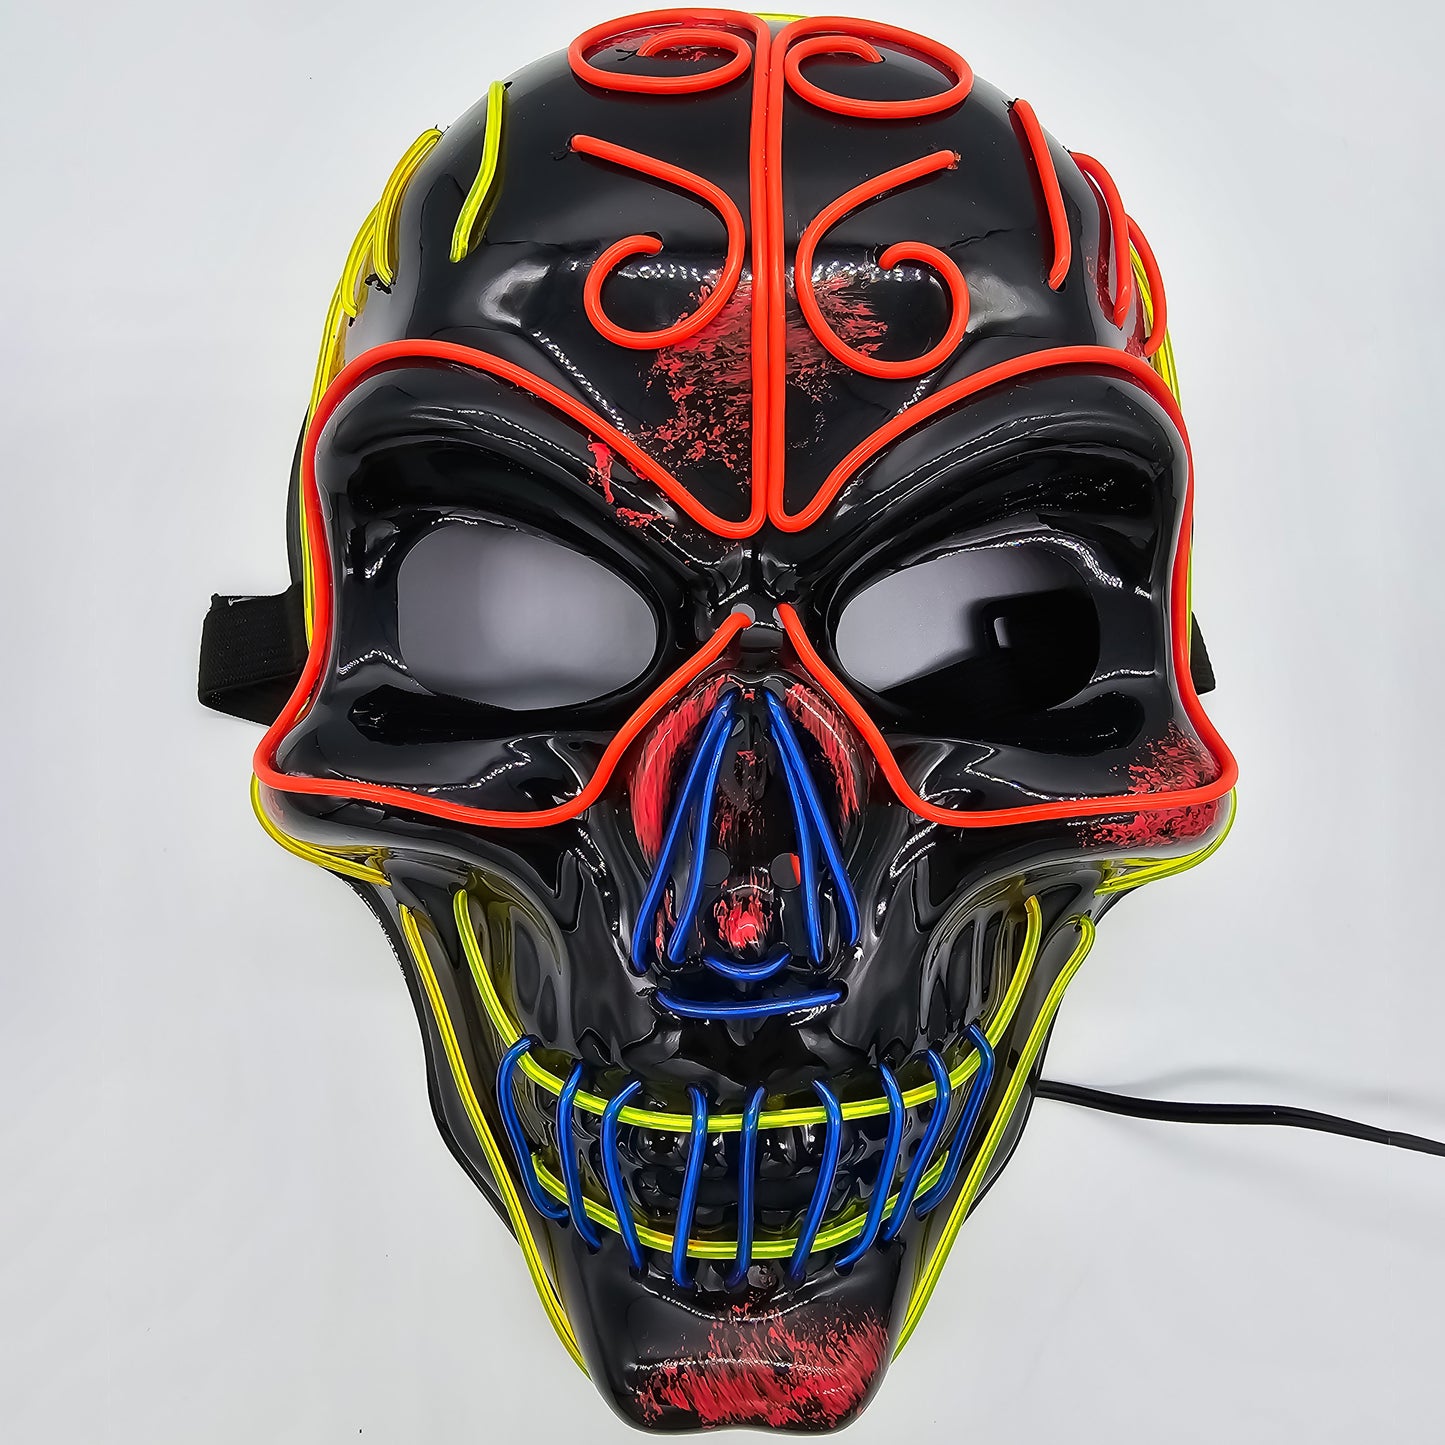 LED Skull Masks